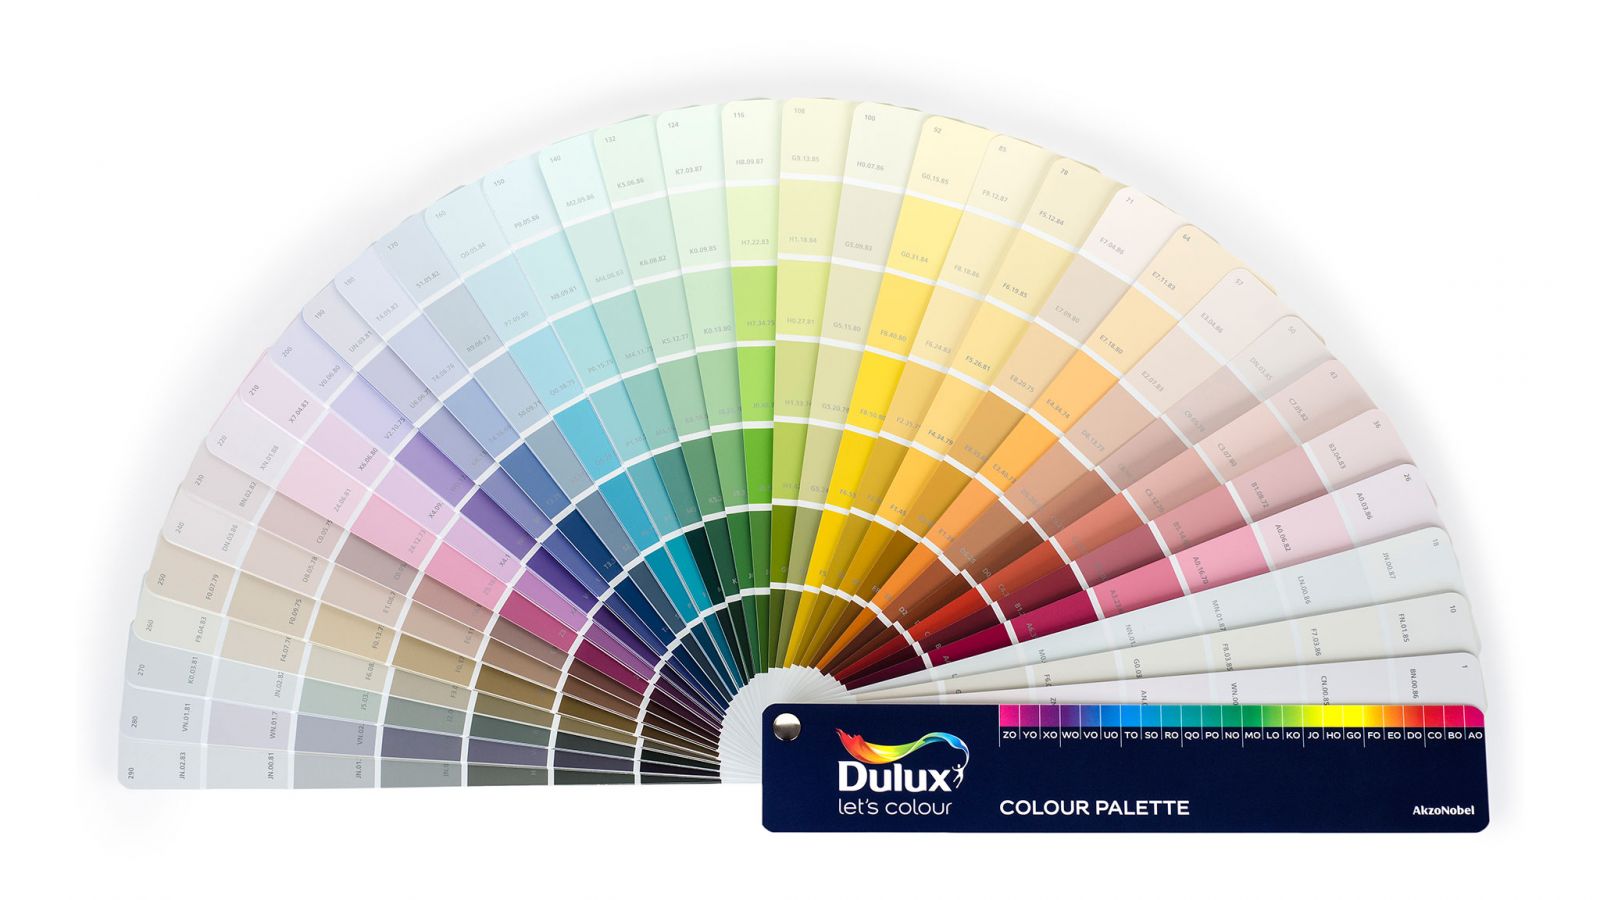 Quạt mã màu sơn Dulux không chỉ hỗ trợ việc sơn tường của bạn mà còn làm tăng thêm tính thẩm mỹ cho không gian sống.